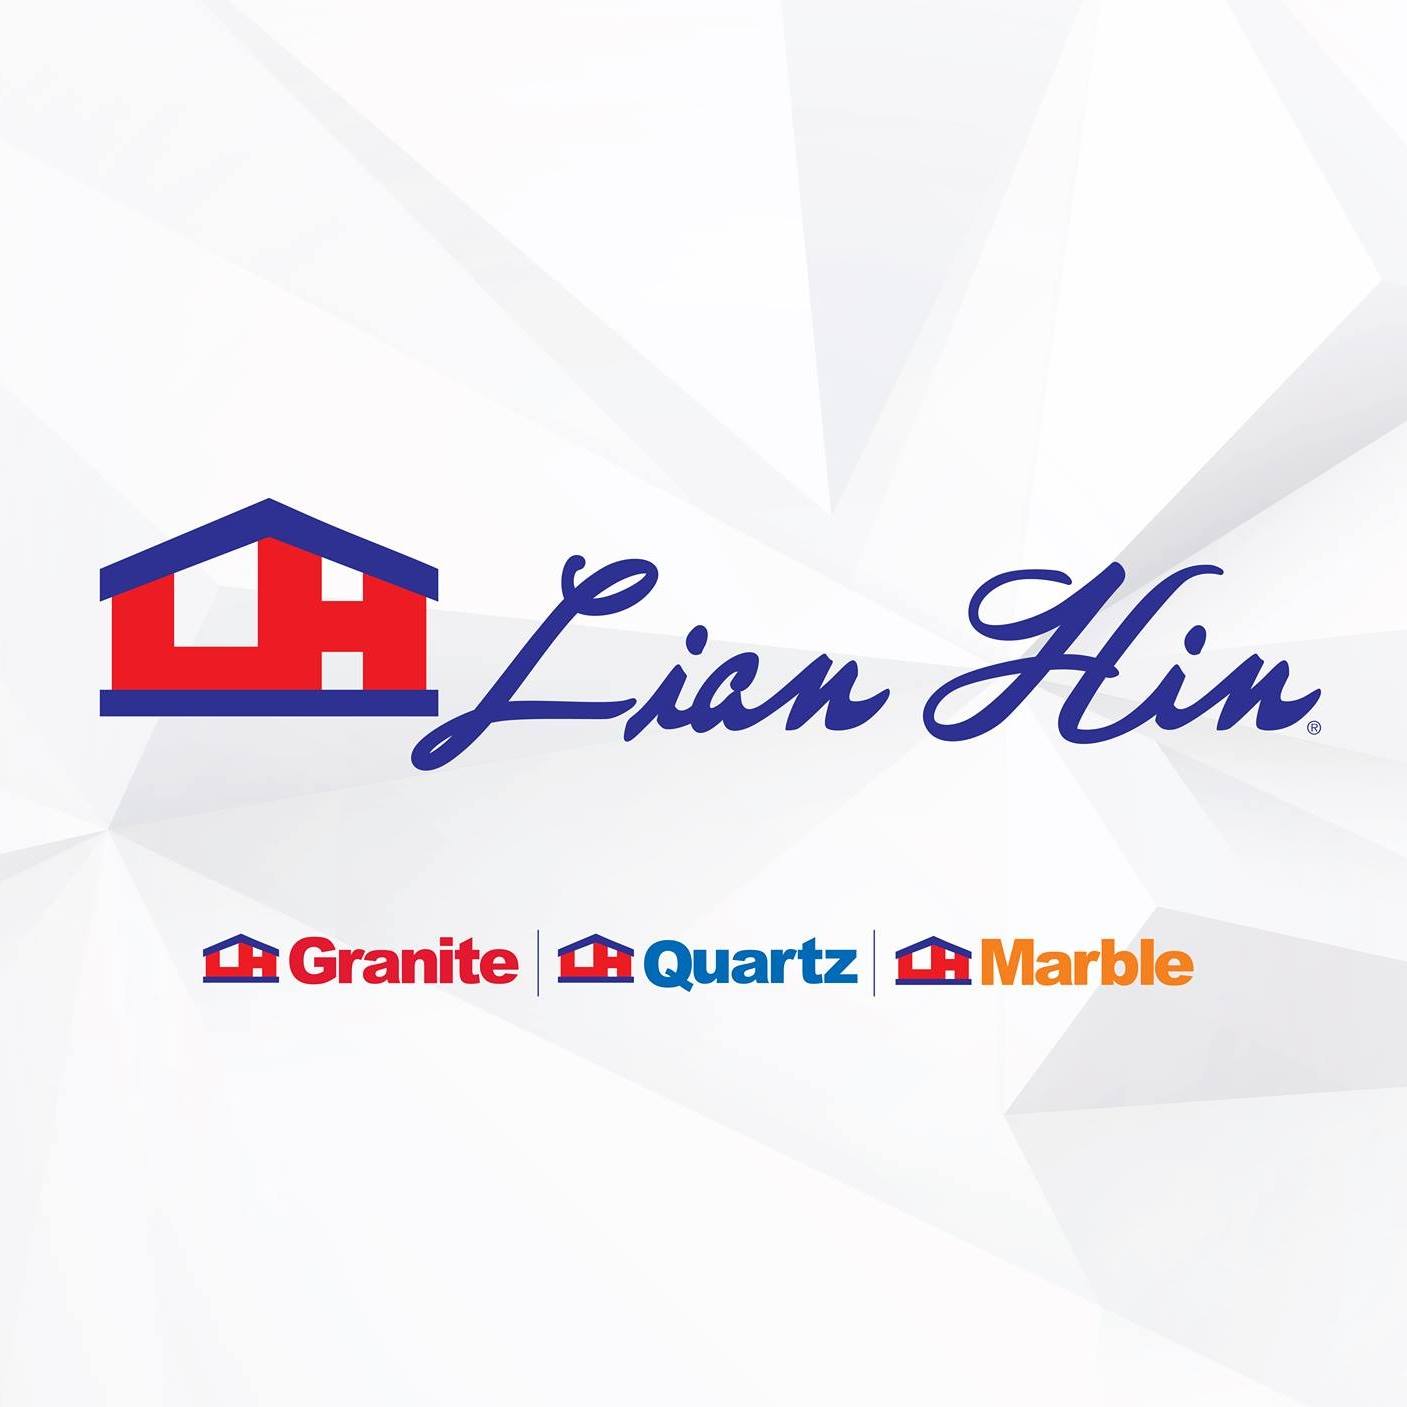 Lian Hong Pte Ltd